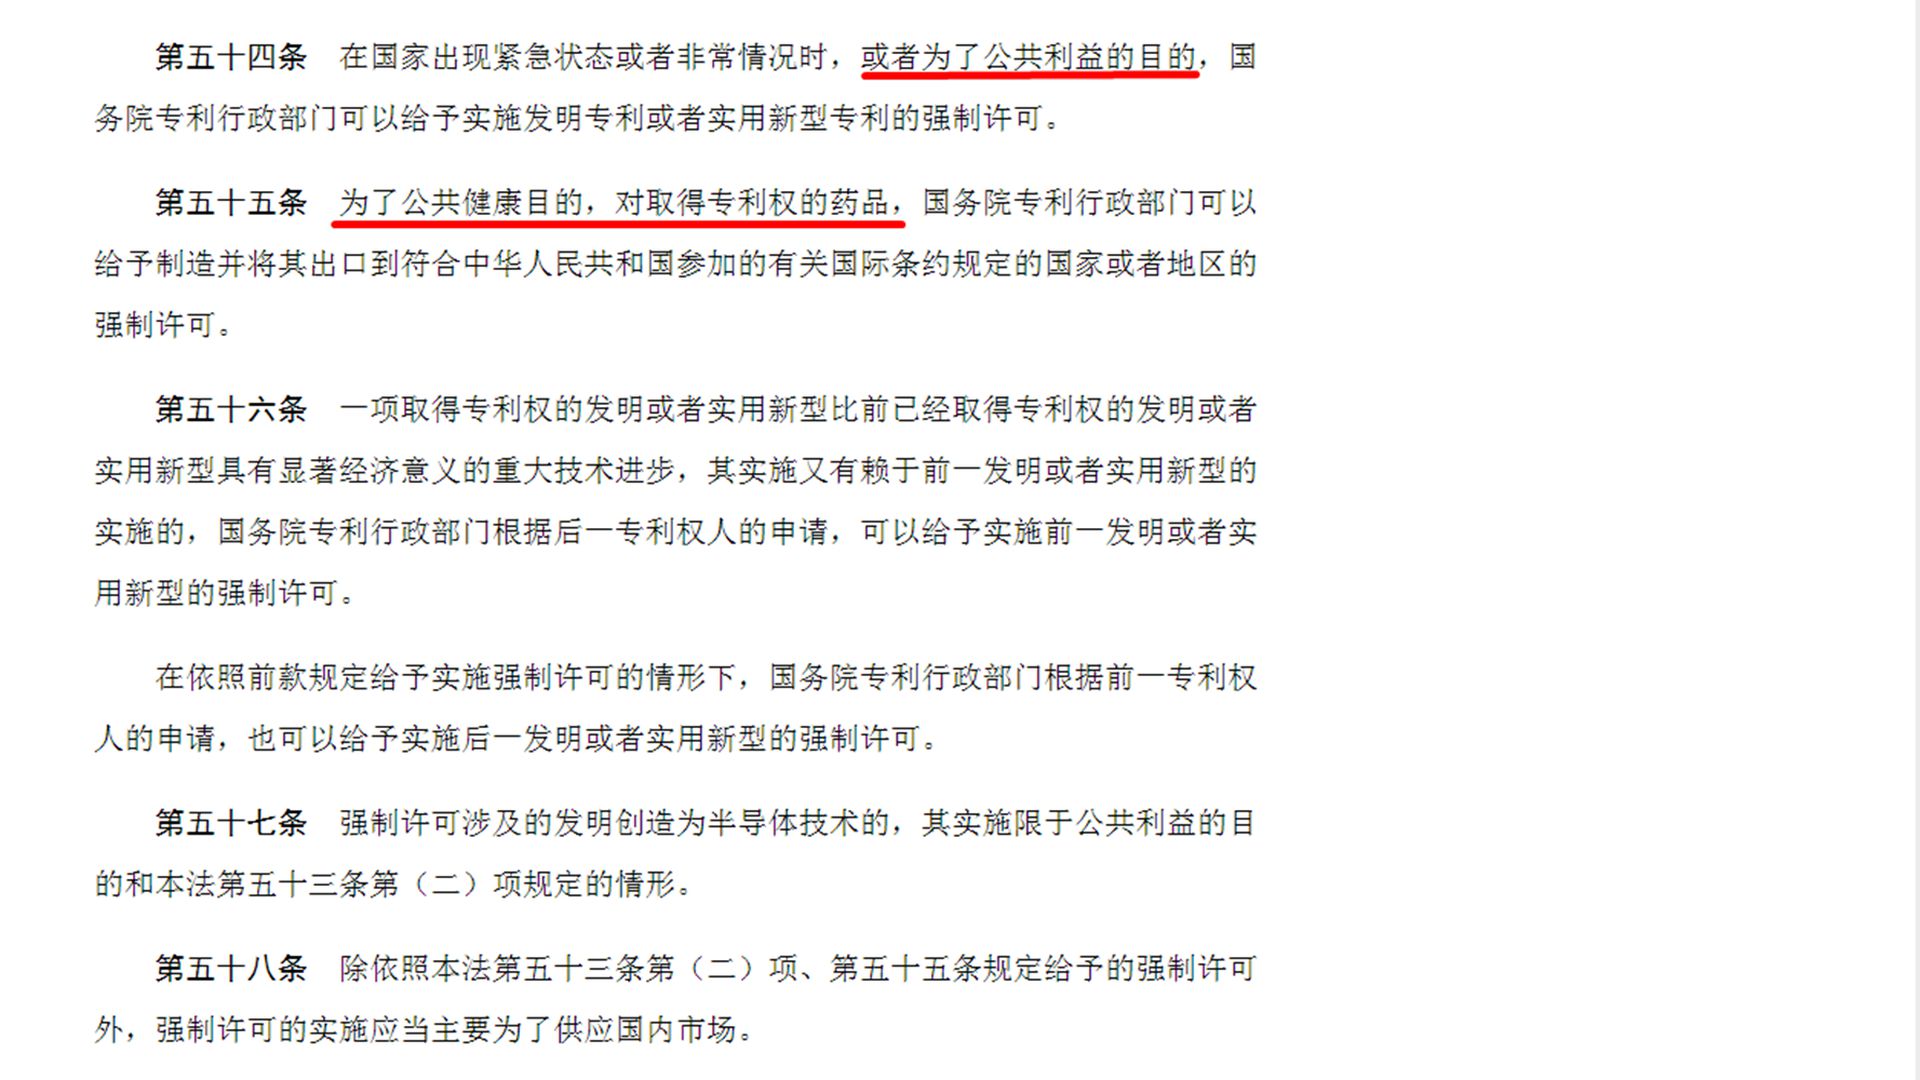 中国《专利法》中关于强制许可的相关规定。（中国人大网截图）